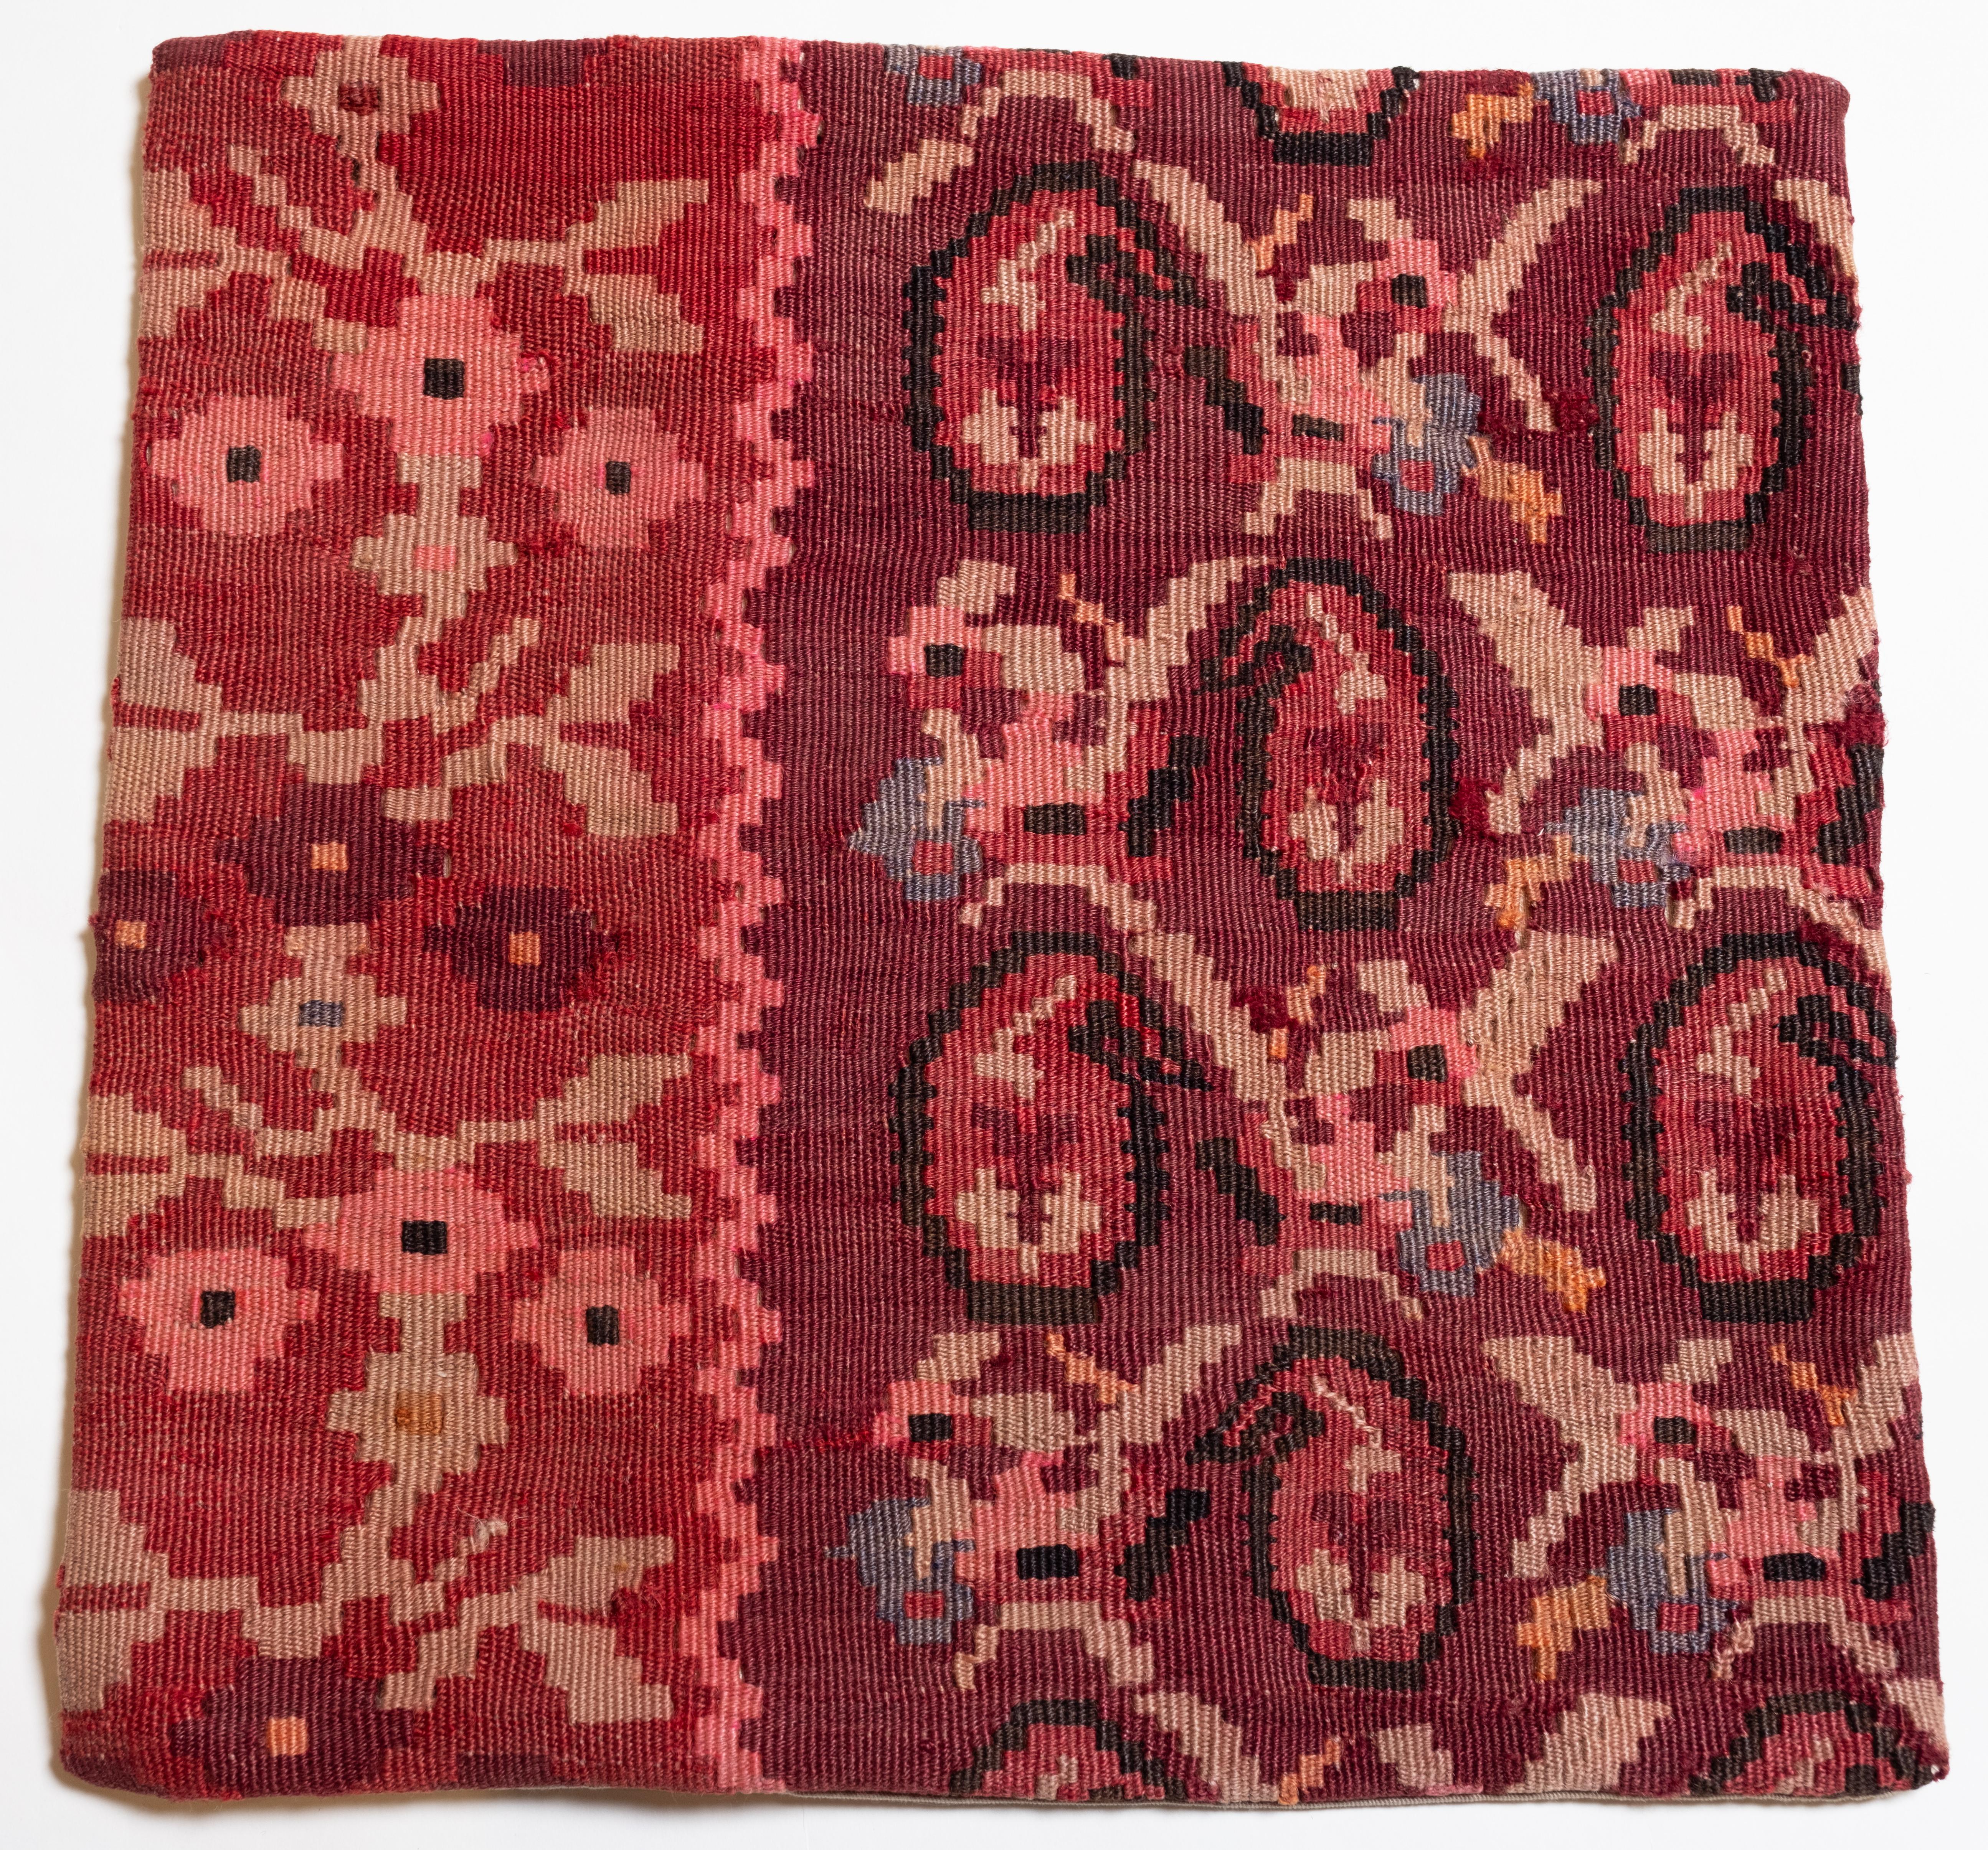 Nous avons fabriqué une housse de coussin en utilisant les parties intactes des kilims anciens et antiques, précieux et de grande qualité, qui ne peuvent être réparés. Comme une peinture, une partie du paysage est découpée dans un kilim, et même